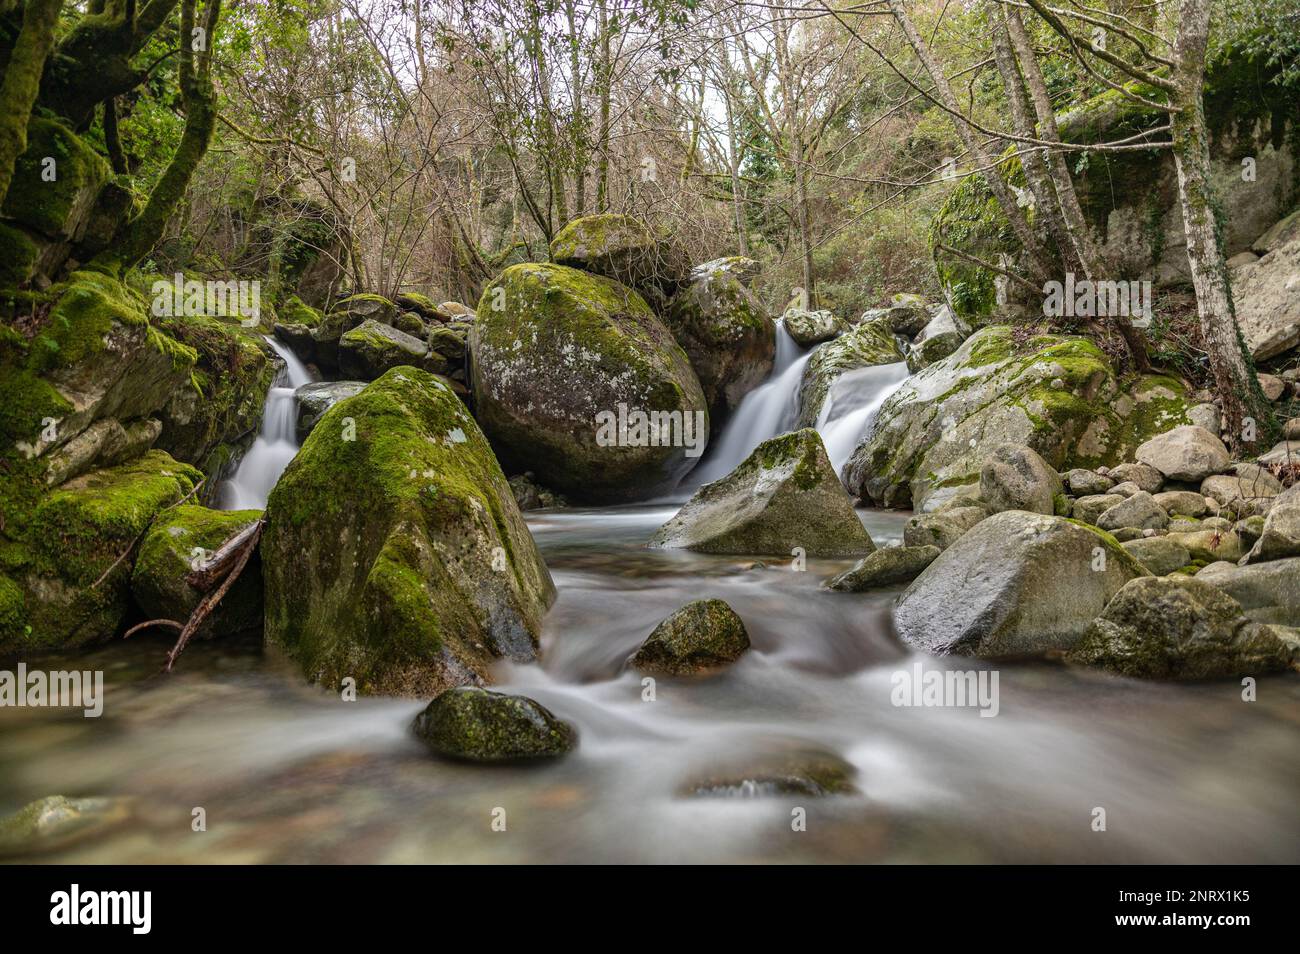 Rochers, rivière et chutes d'eau dans un décor vert de sous-bois Foto Stock